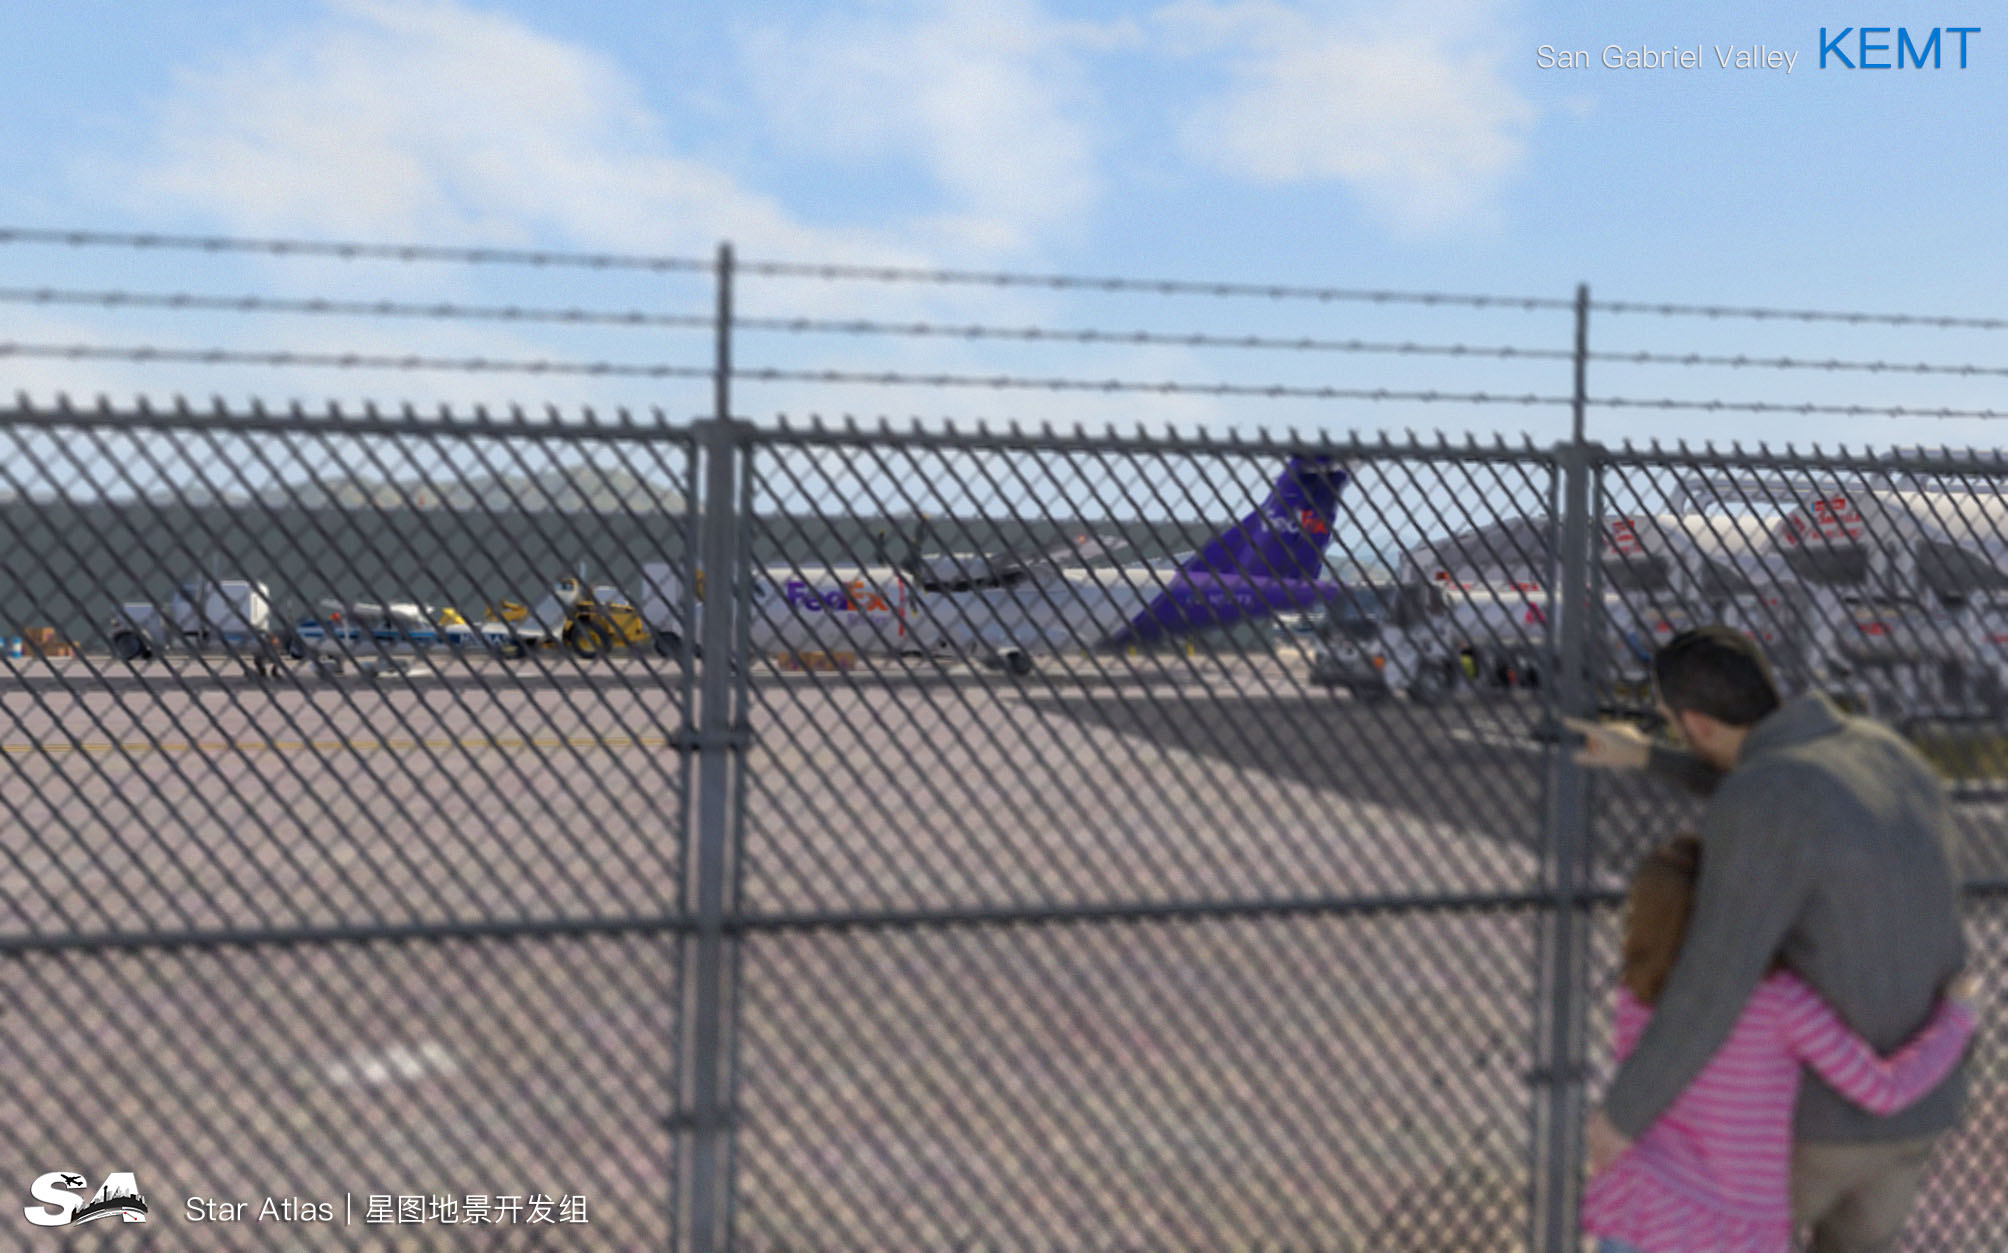 【X-Plane】KEMT-圣盖博谷机场 HD 1.0-8079 